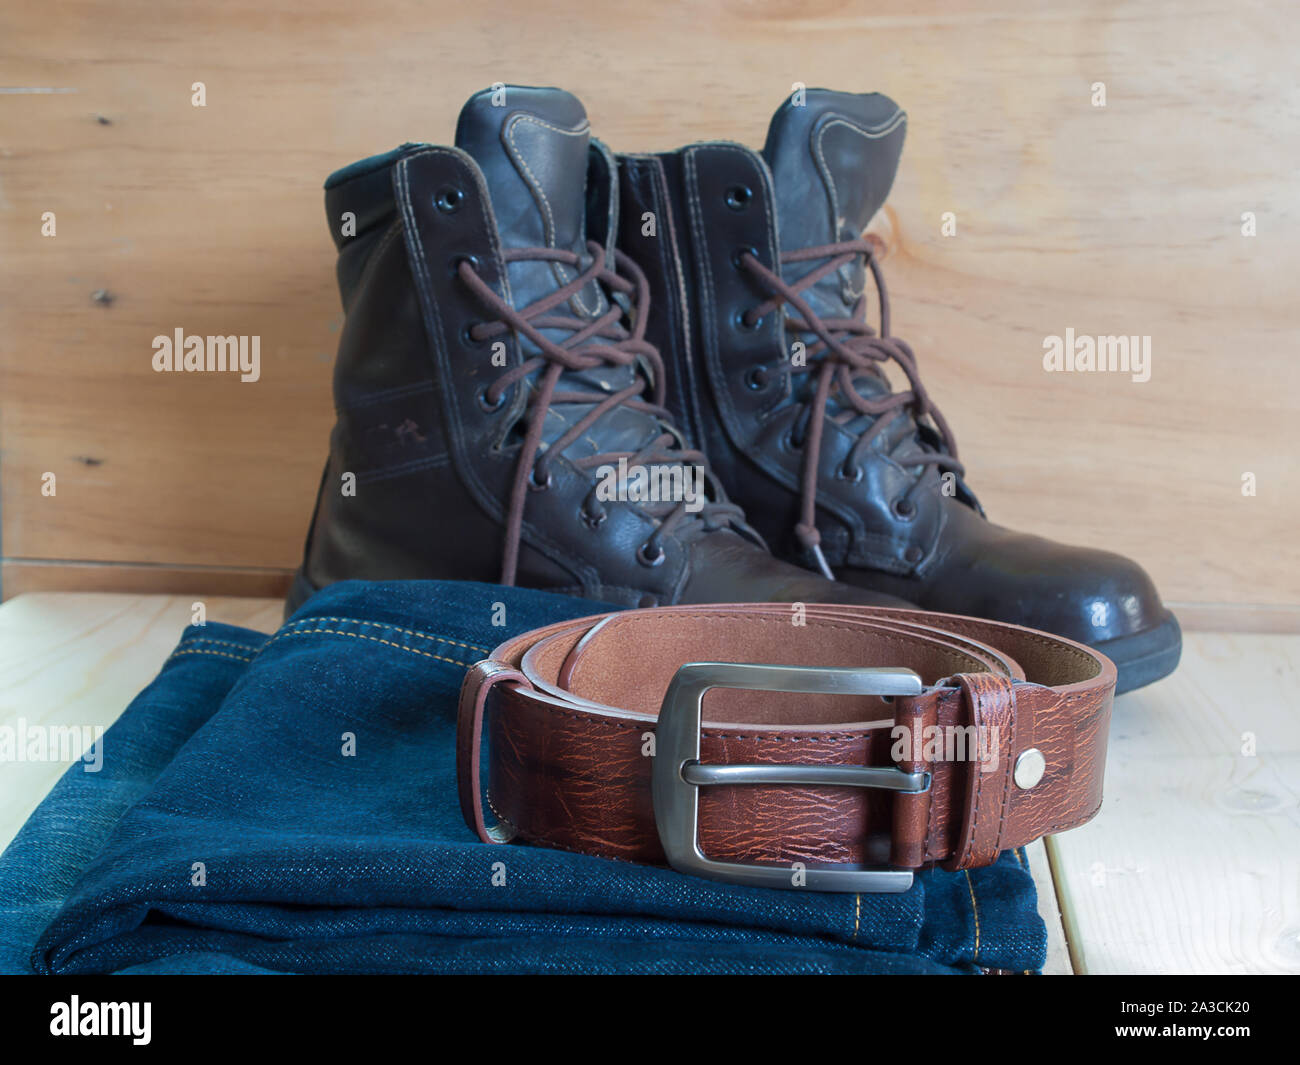 Chaussures, ceintures, jeans , placé sur une table en bois. Banque D'Images